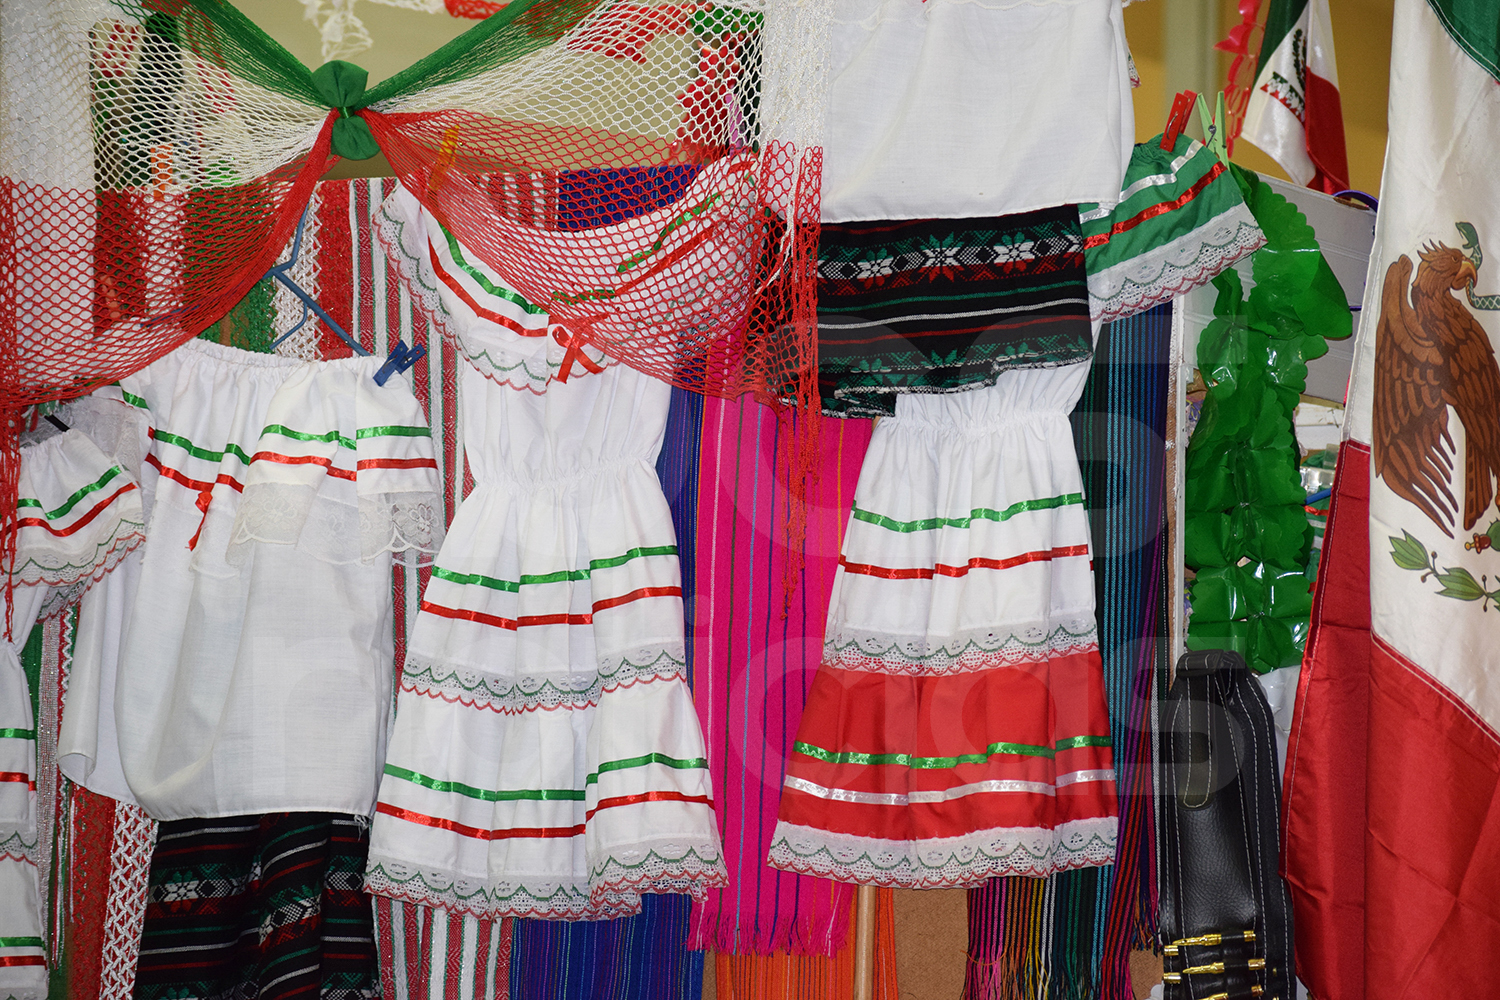 Vestidos para niñas y banderas, lo más vendido en fiestas patrias en La Paz  - BCS Noticias